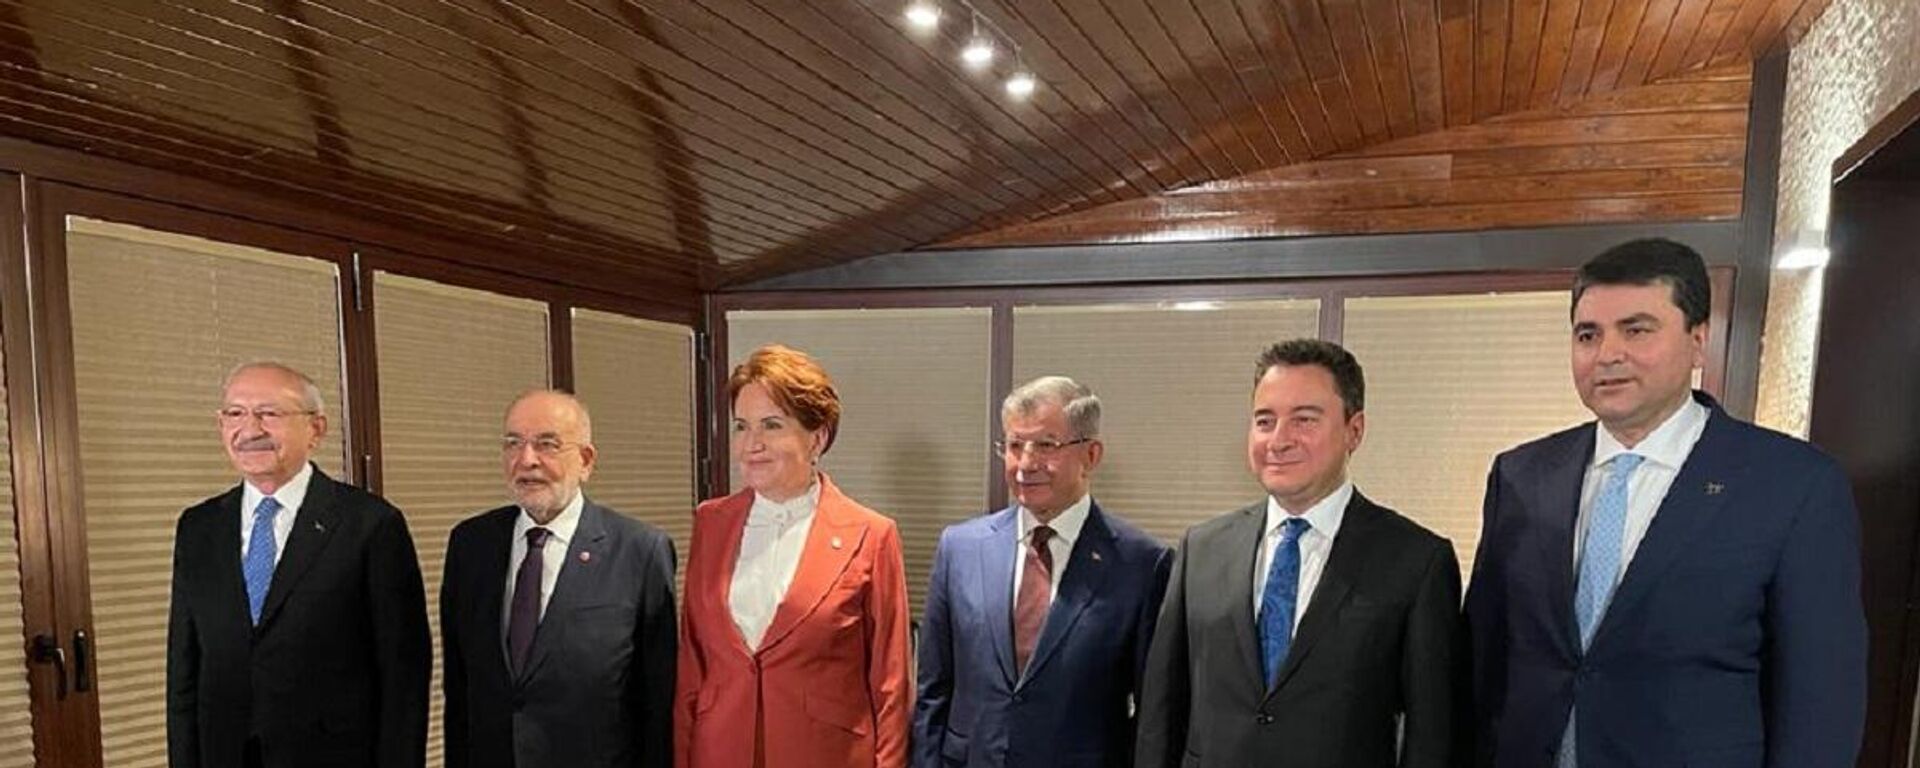 CHP Genel Başkanı Kemal Kılıçdaroğlu'nun daveti ile 6 parti lideri akşam yemeğinde bir araya geldi. - Sputnik Türkiye, 1920, 21.02.2022